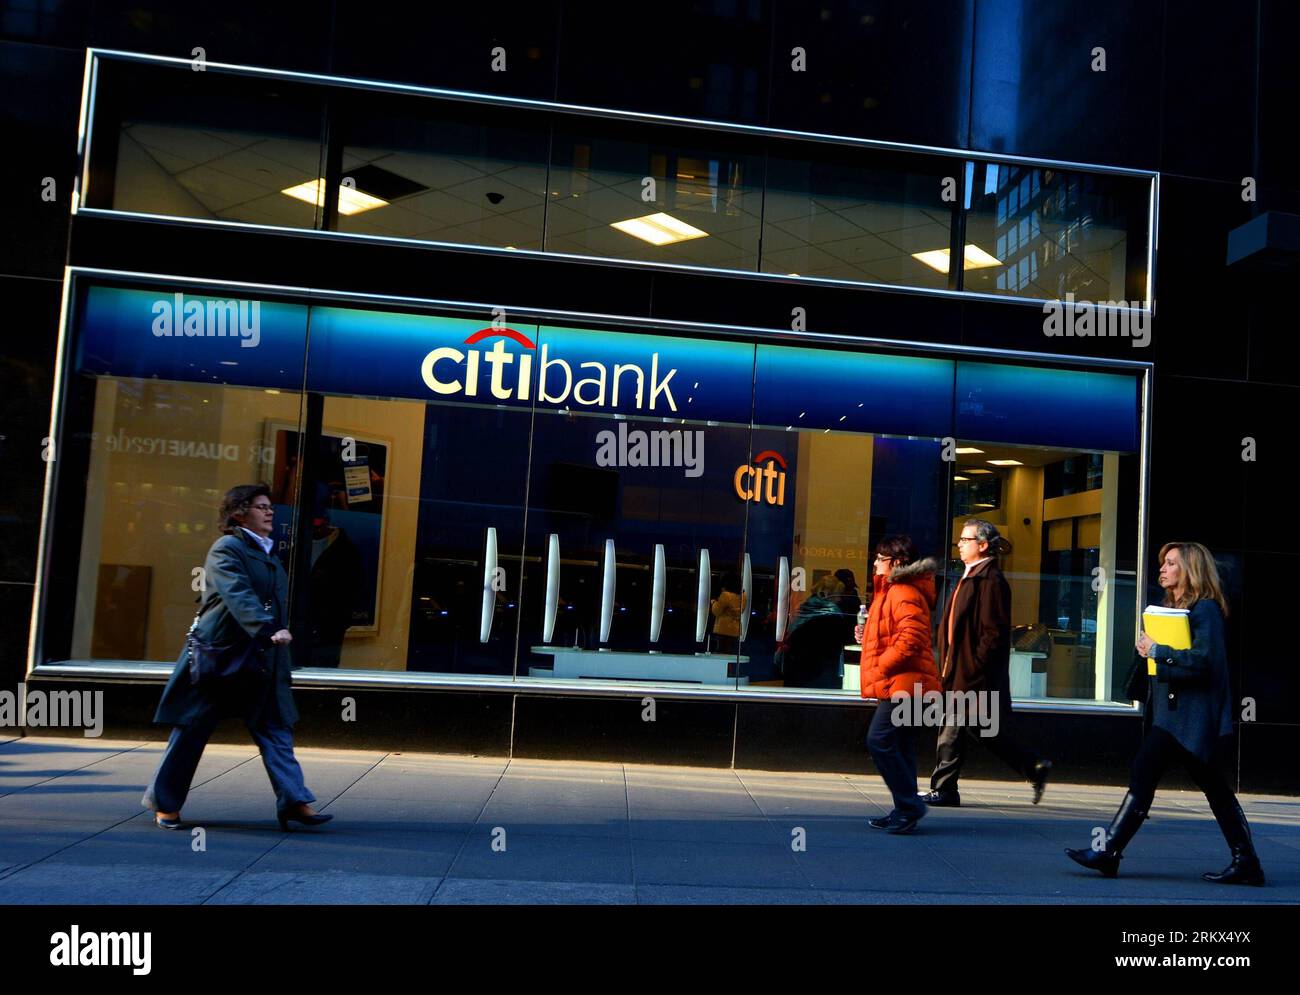 Unternehmen: Citigroup (121205) -- NUEVA YORK, 5 de diciembre de 2012 (Xinhua) -- La gente camina frente a una sucursal de Citibank en Nueva York, Estados Unidos, 5 de diciembre de 2012. Citigroup anunció el miércoles que recortaría 11.000 empleos, o aproximadamente el 4 por ciento de su fuerza laboral actual, en un esfuerzo por reducir costos. (Xinhua/Wang Lei) ECONOMÍA-BANCA-CITIGROUP-LEAN PUBLICATIONxNOTxINxCHN Foto de stock